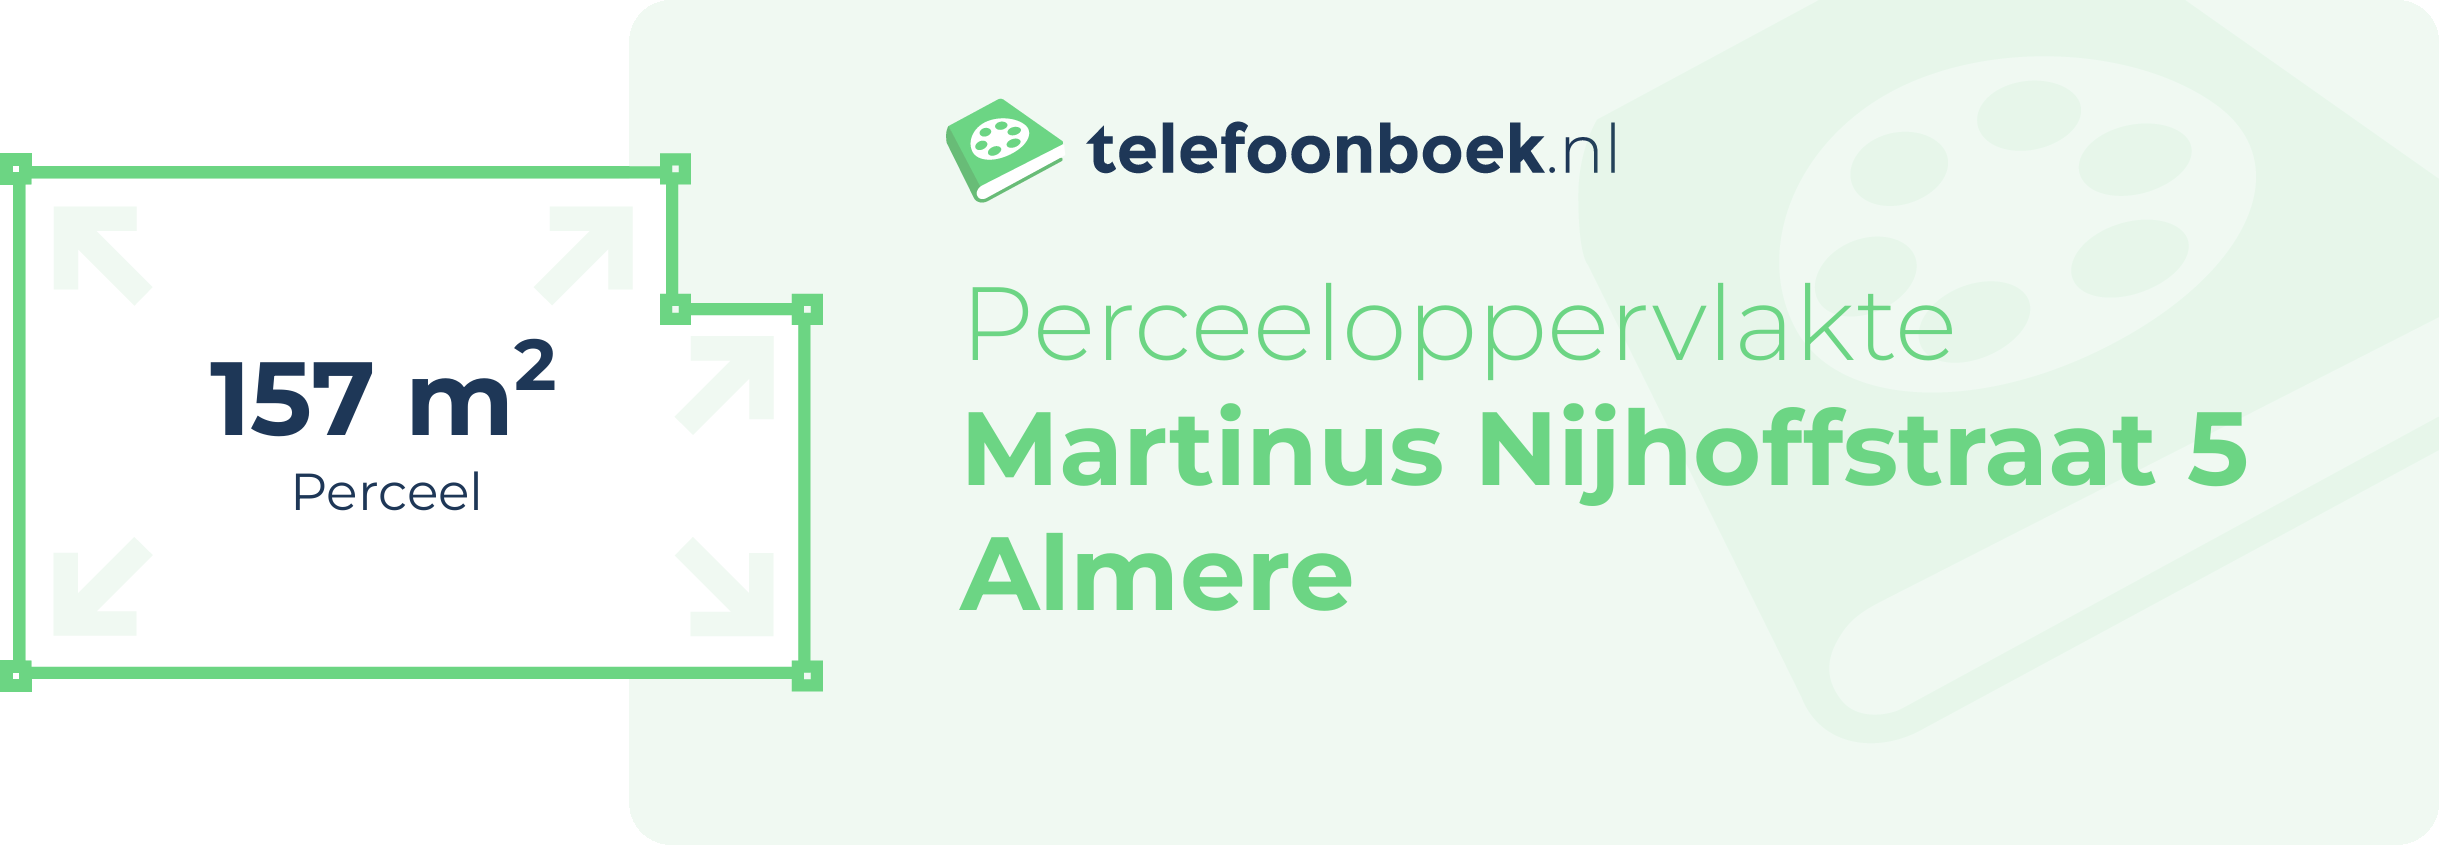 Perceeloppervlakte Martinus Nijhoffstraat 5 Almere